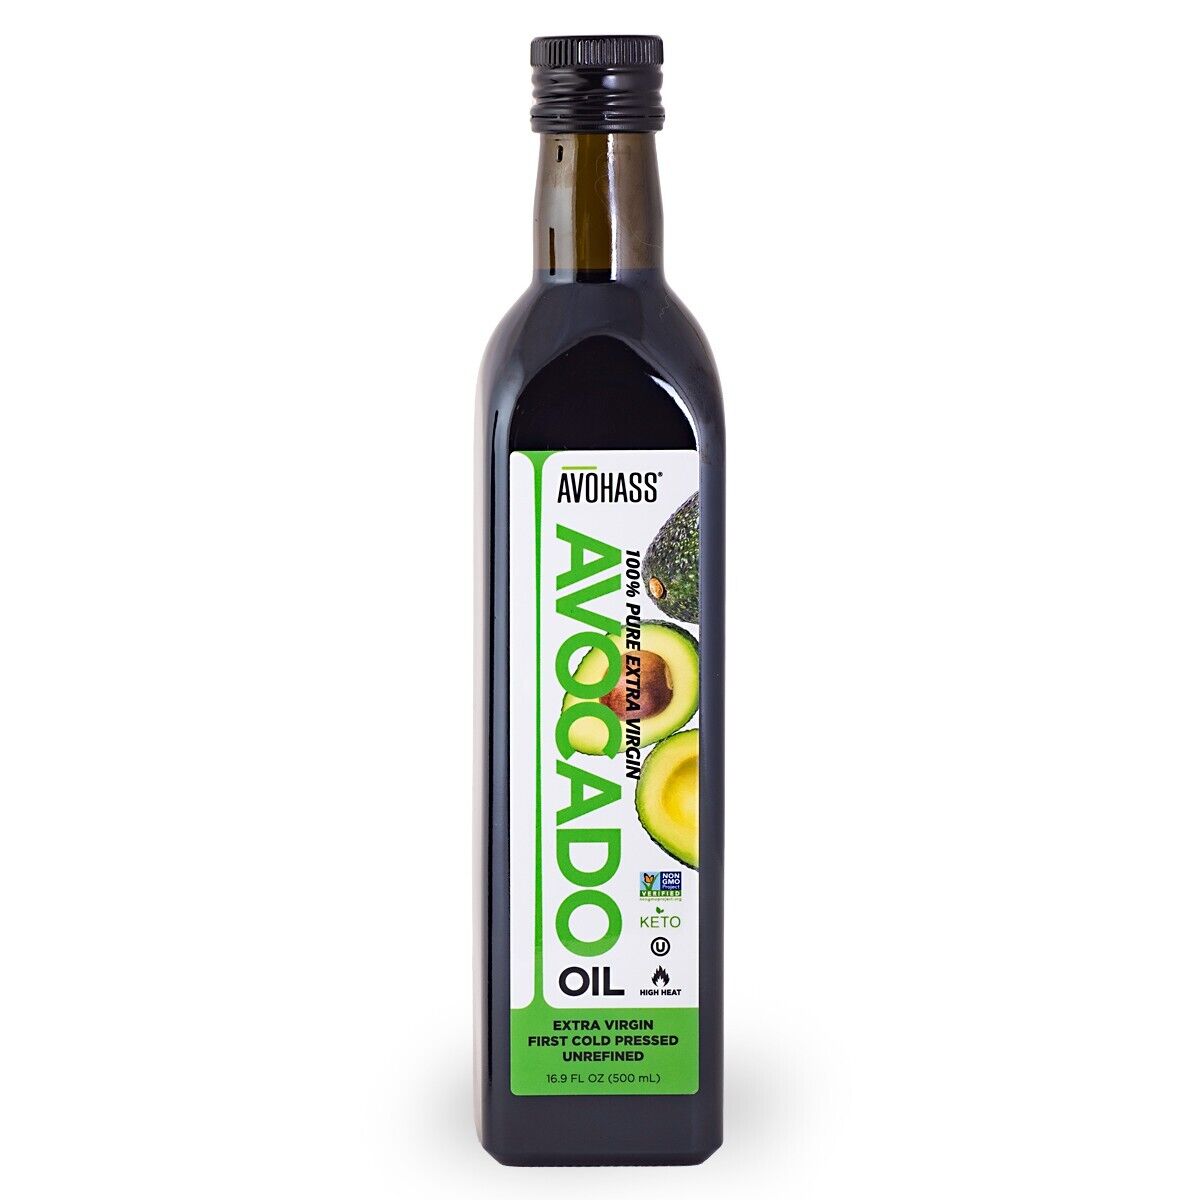 Avohass Mexico Extra Virgin Avocado Oil 16.9 fl oz Bottle